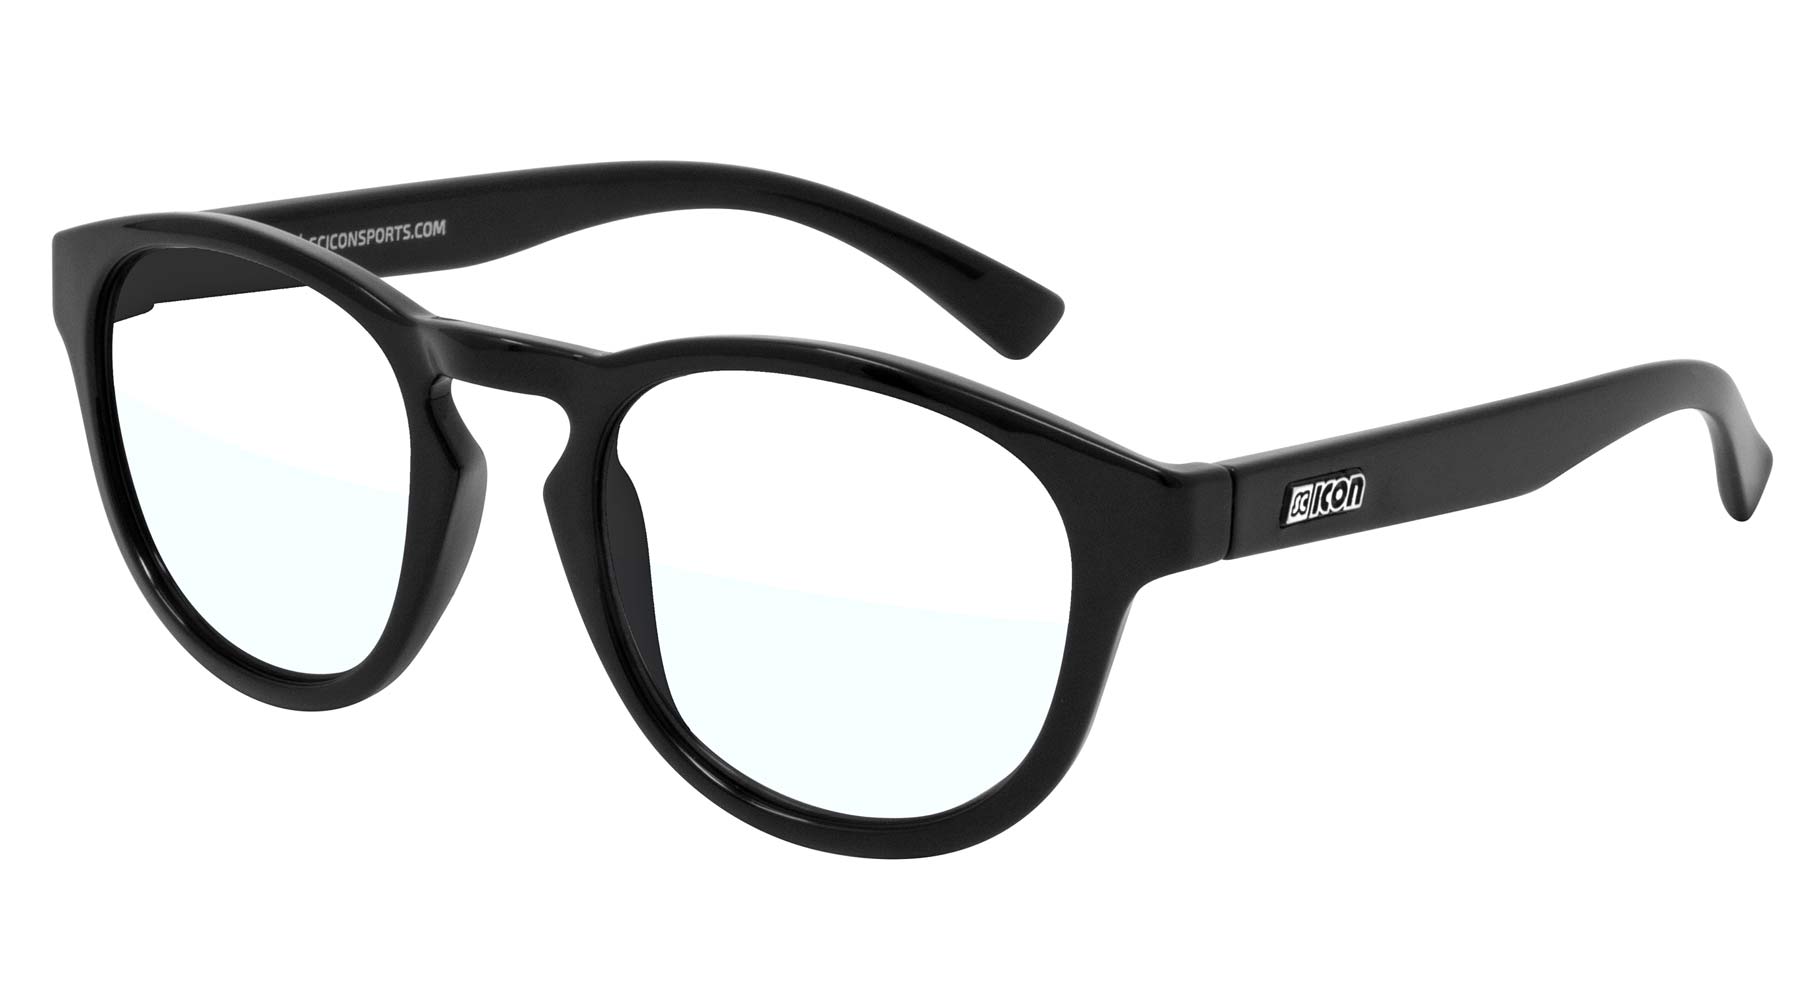 Sciocon Blue Zero glasses off-the-bike, reduce screen time fatigue, Protom black